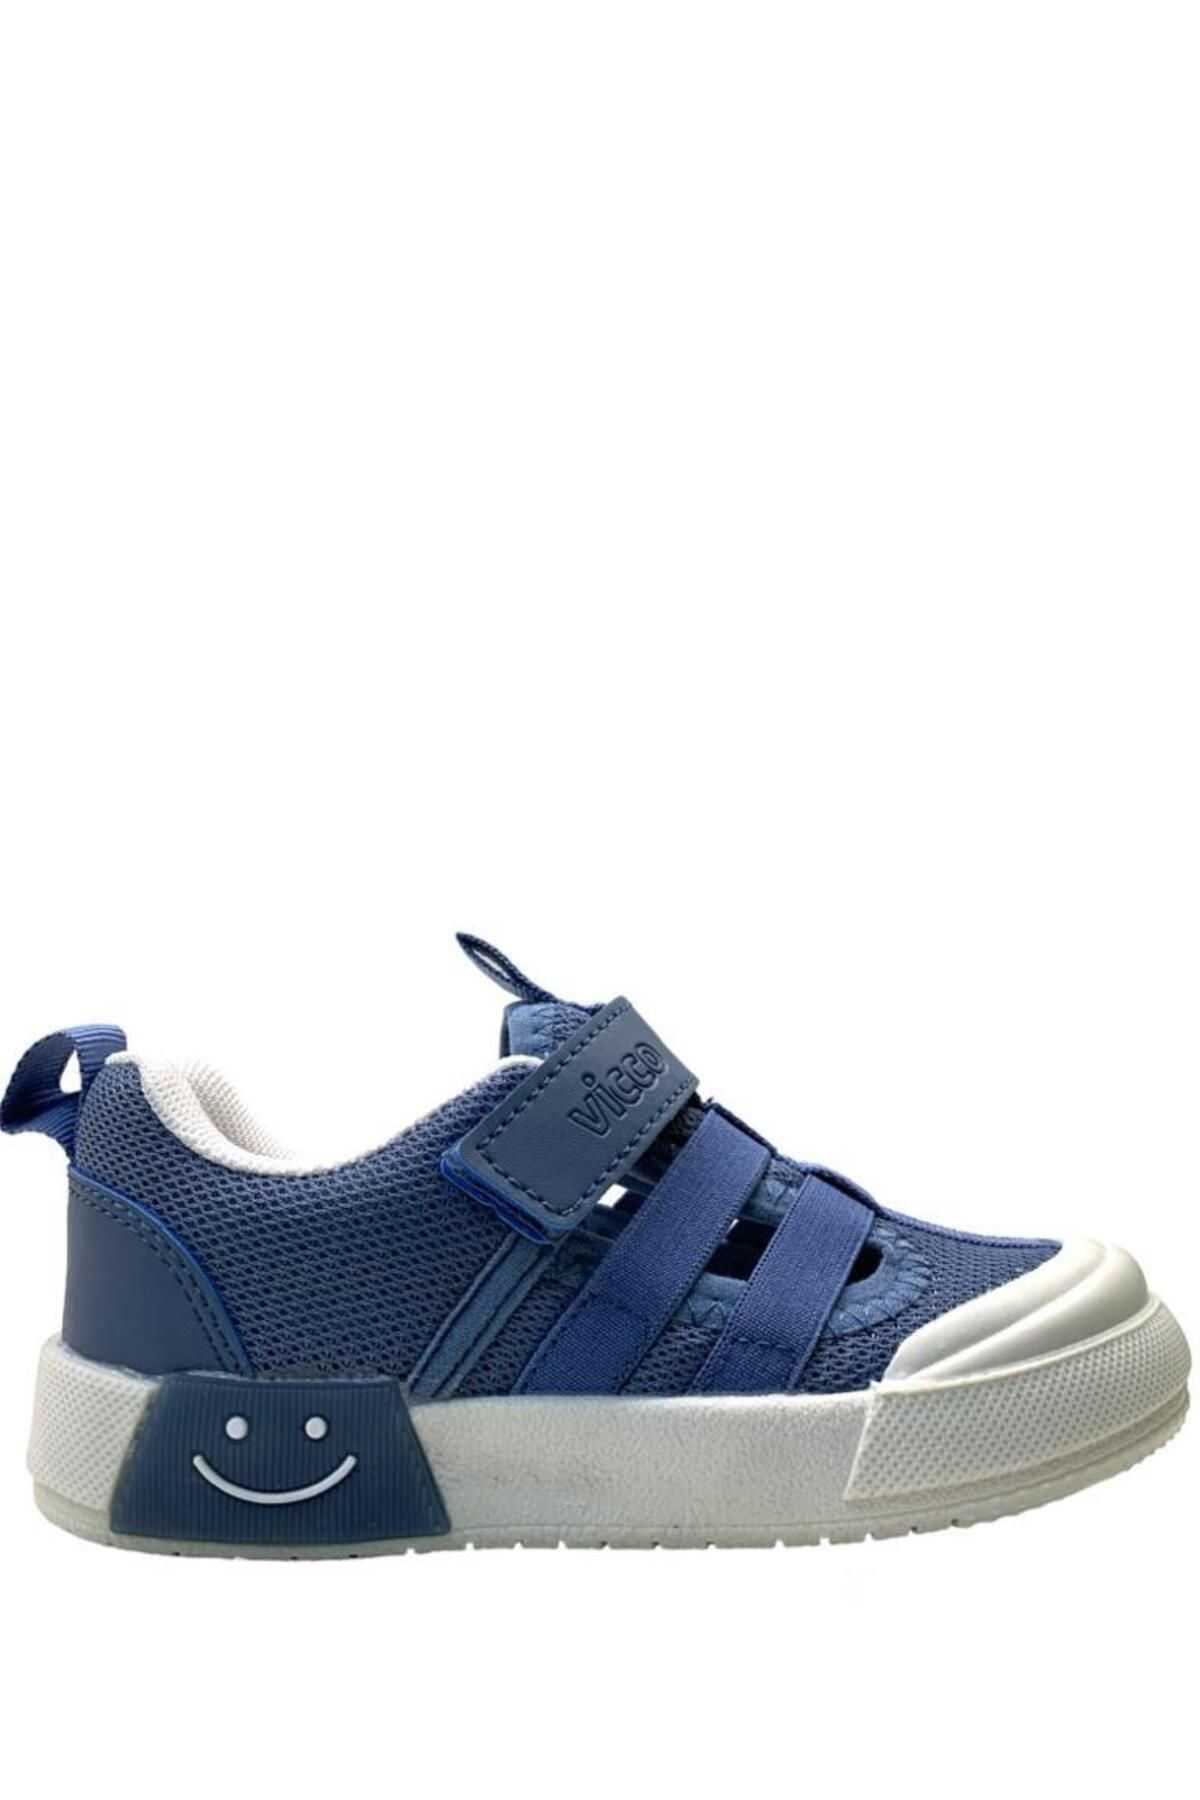 Vicco Momo Ortopedik Erkek Çocuk Kot Mavi Keten Işıklı Sneaker